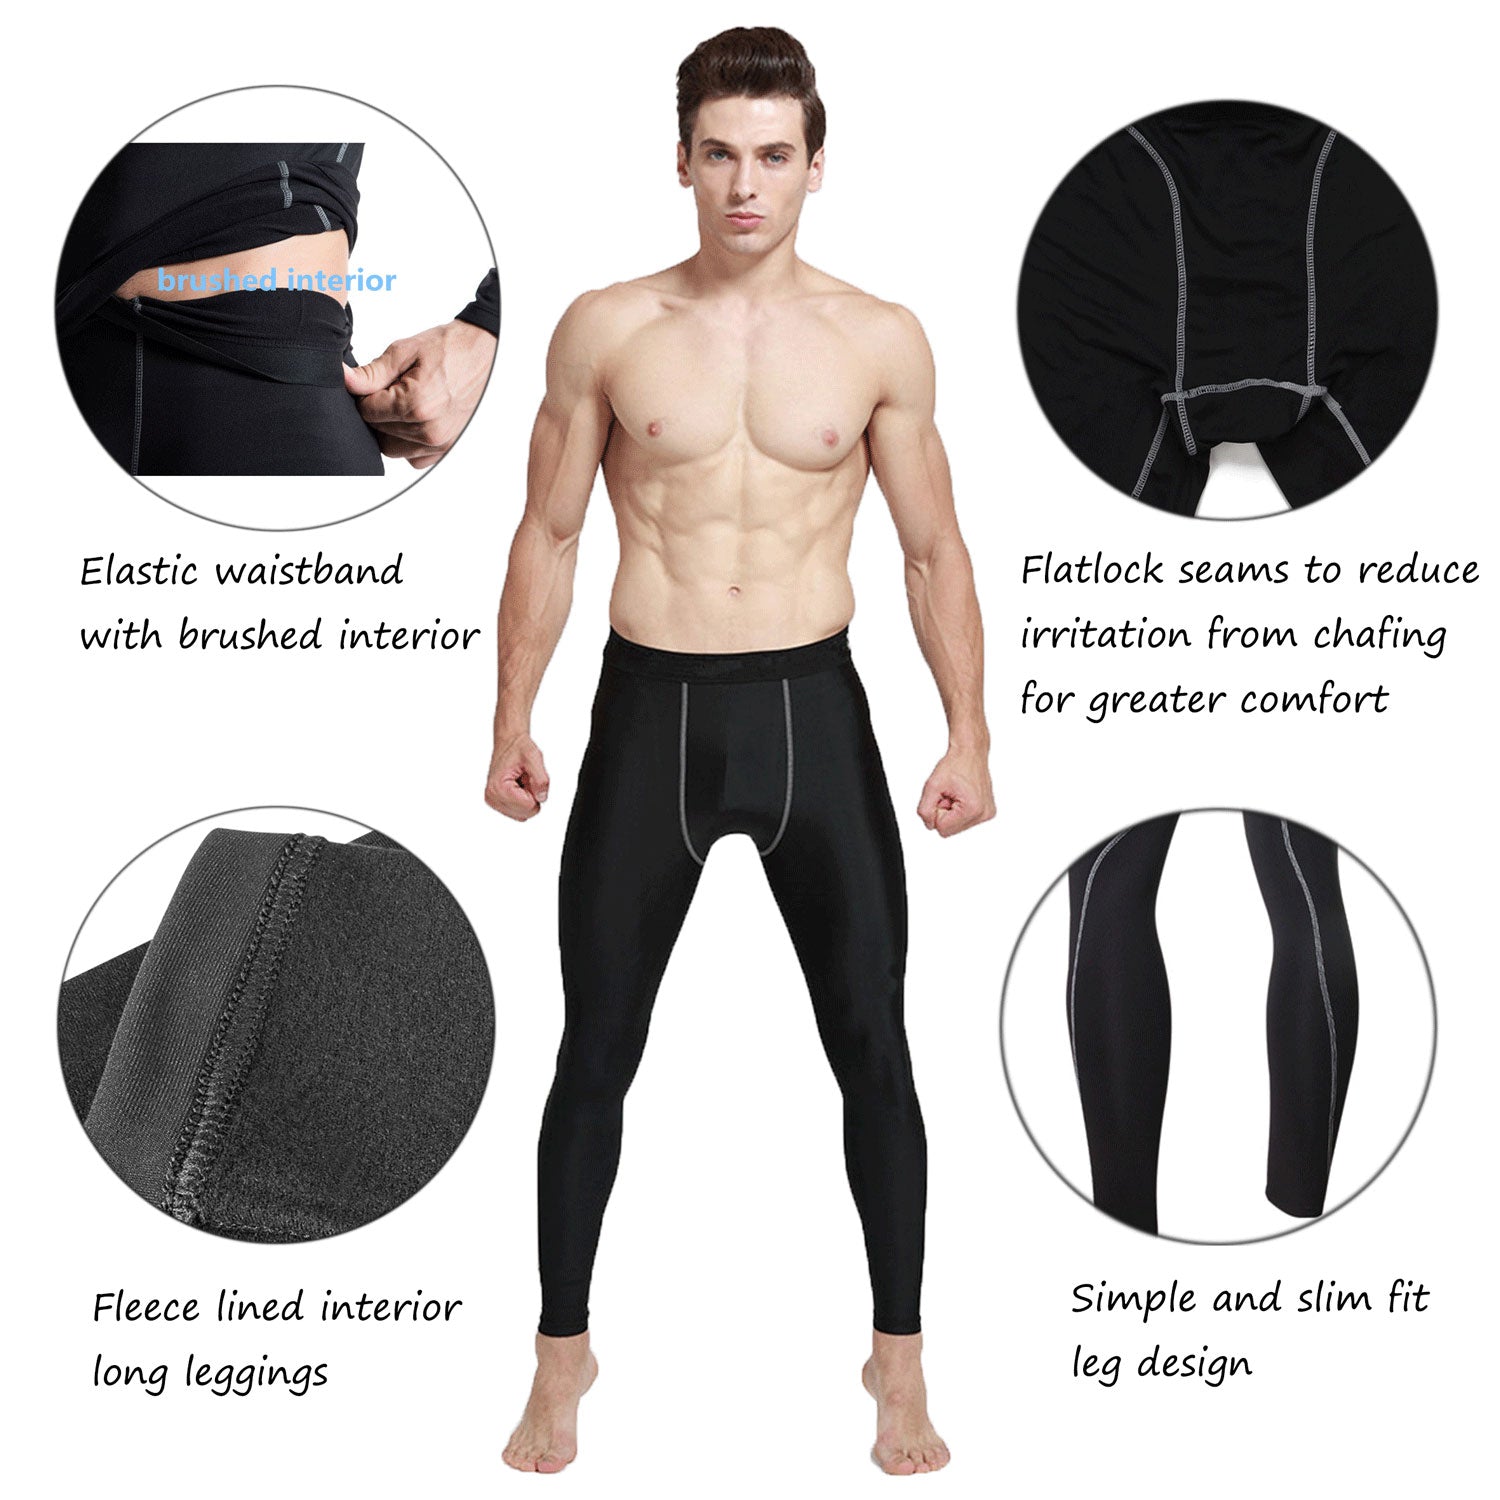 Mens Thermal Underwear Pant Long Johns Legging Base Layer Bottom – LANBAOSI